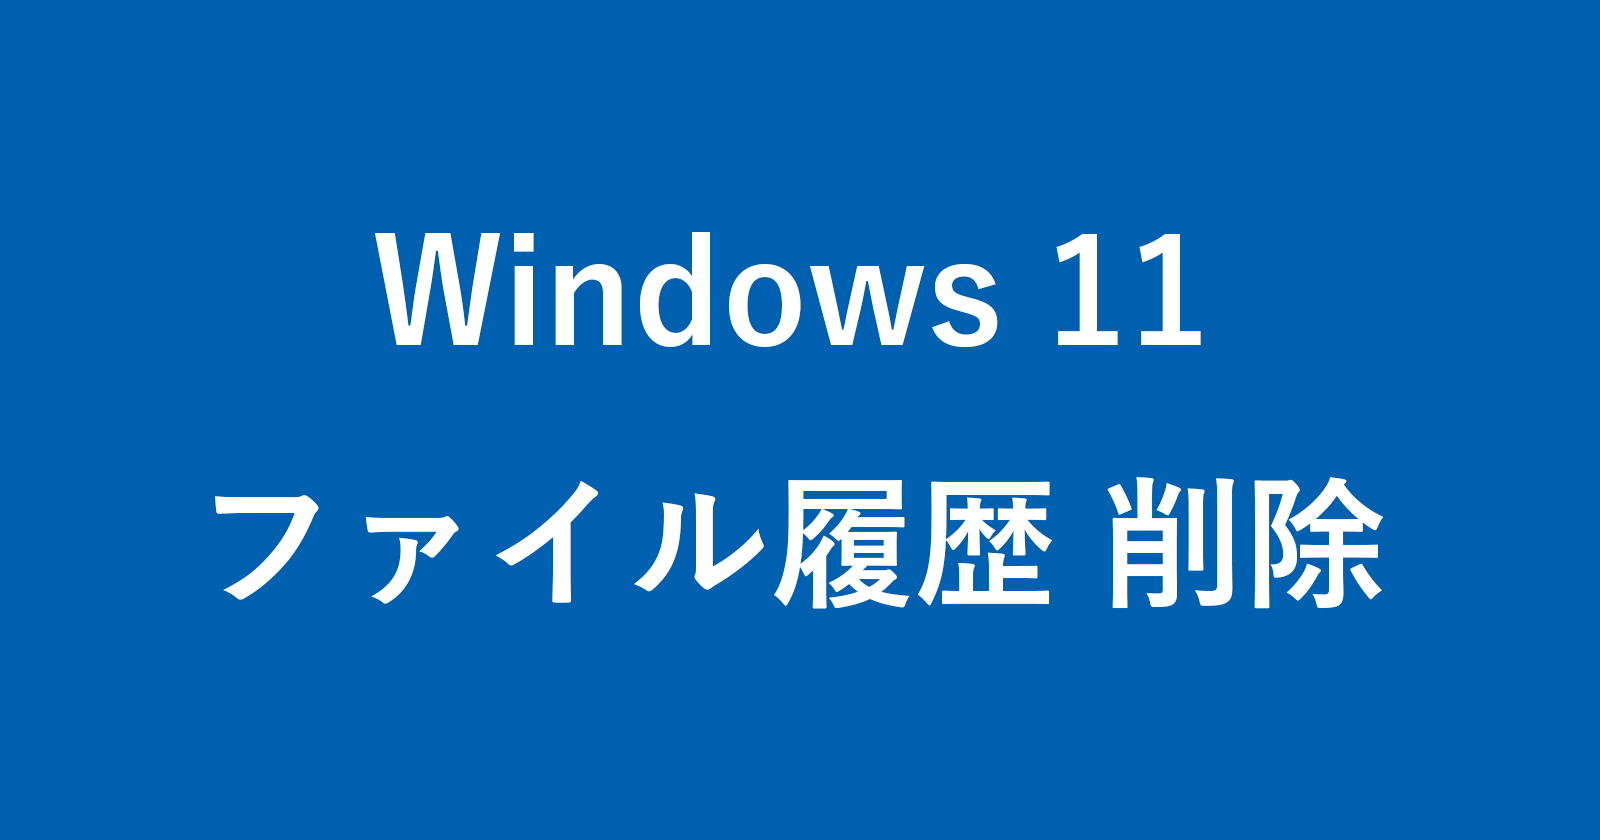 windows 11 delete file history